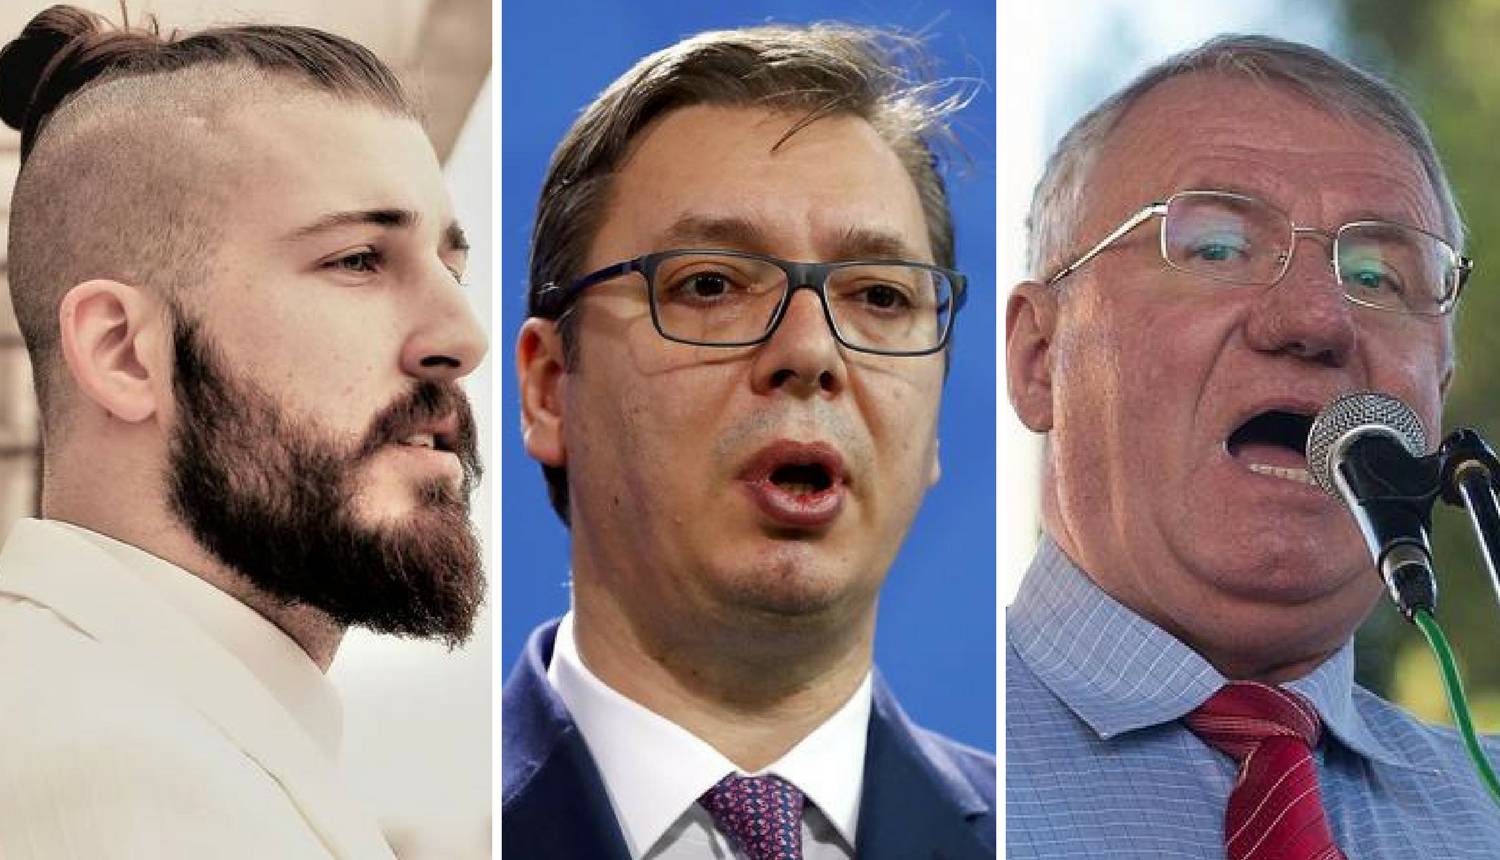 Šarolik izbor: Može li izmišljeni lik postati predsjednik Srbije?